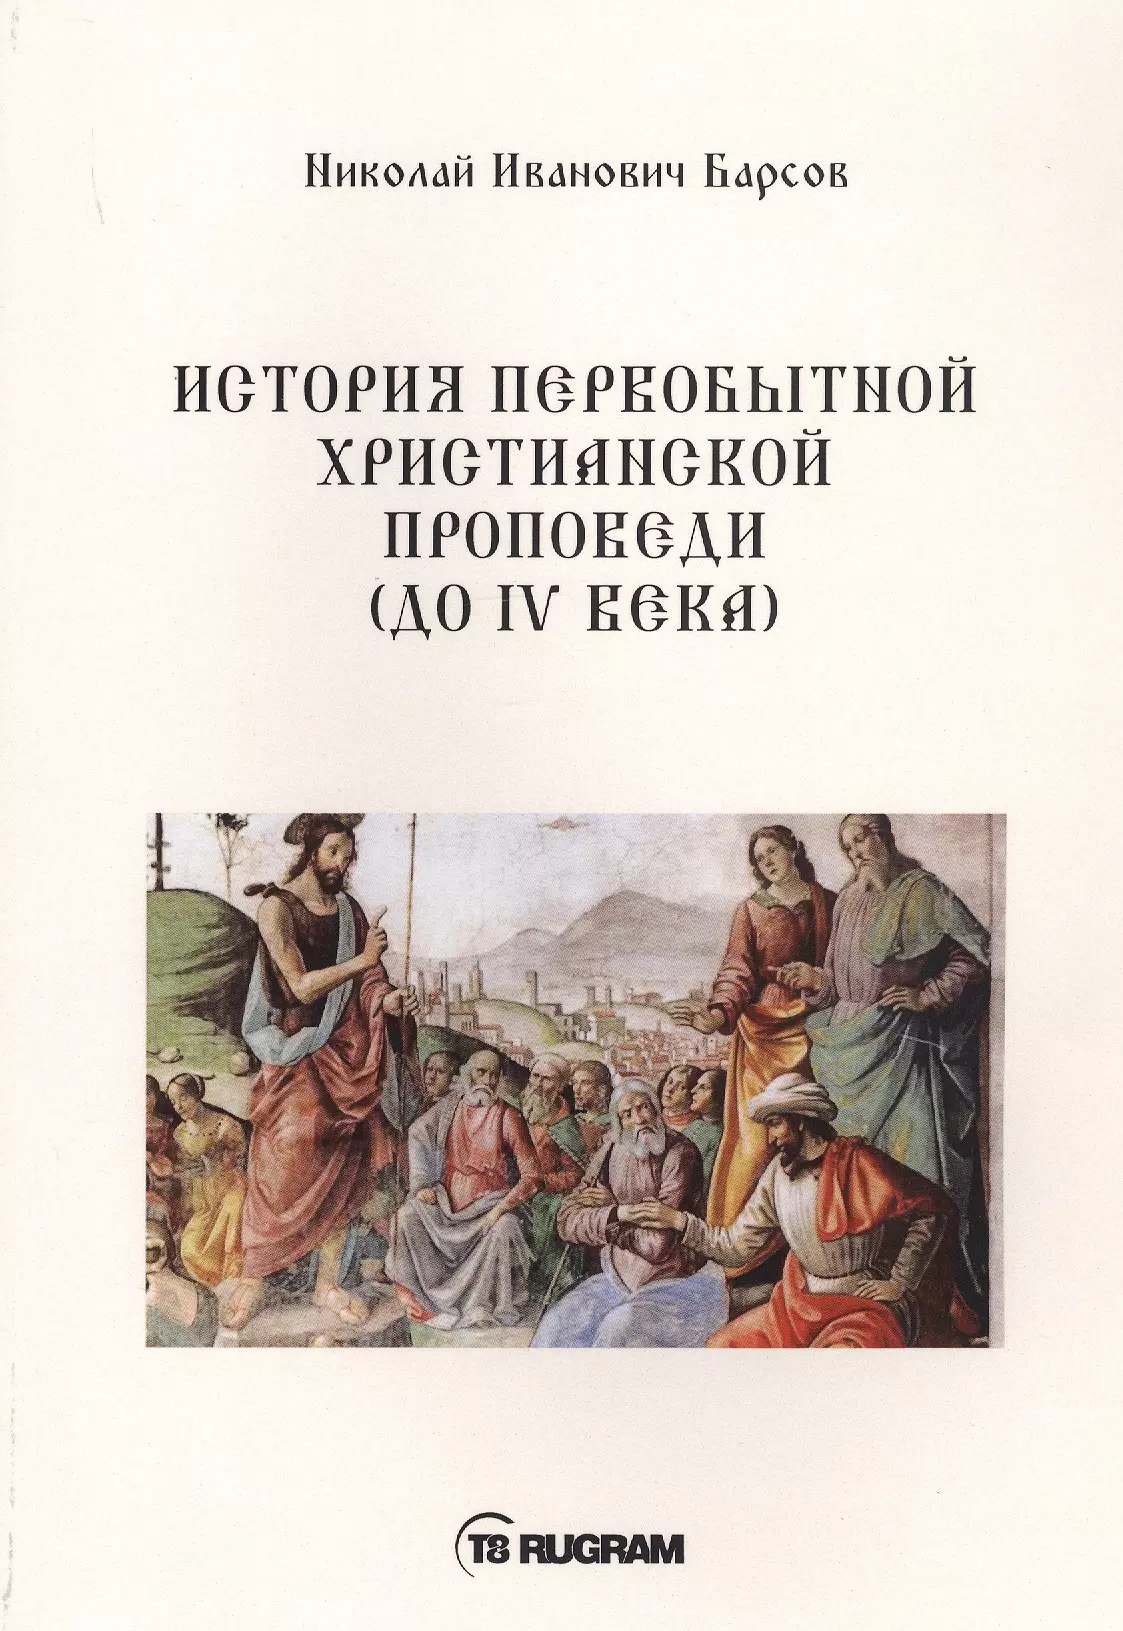 Барсов Николай Павлович - История первобытной христианской проповеди (до IV века)